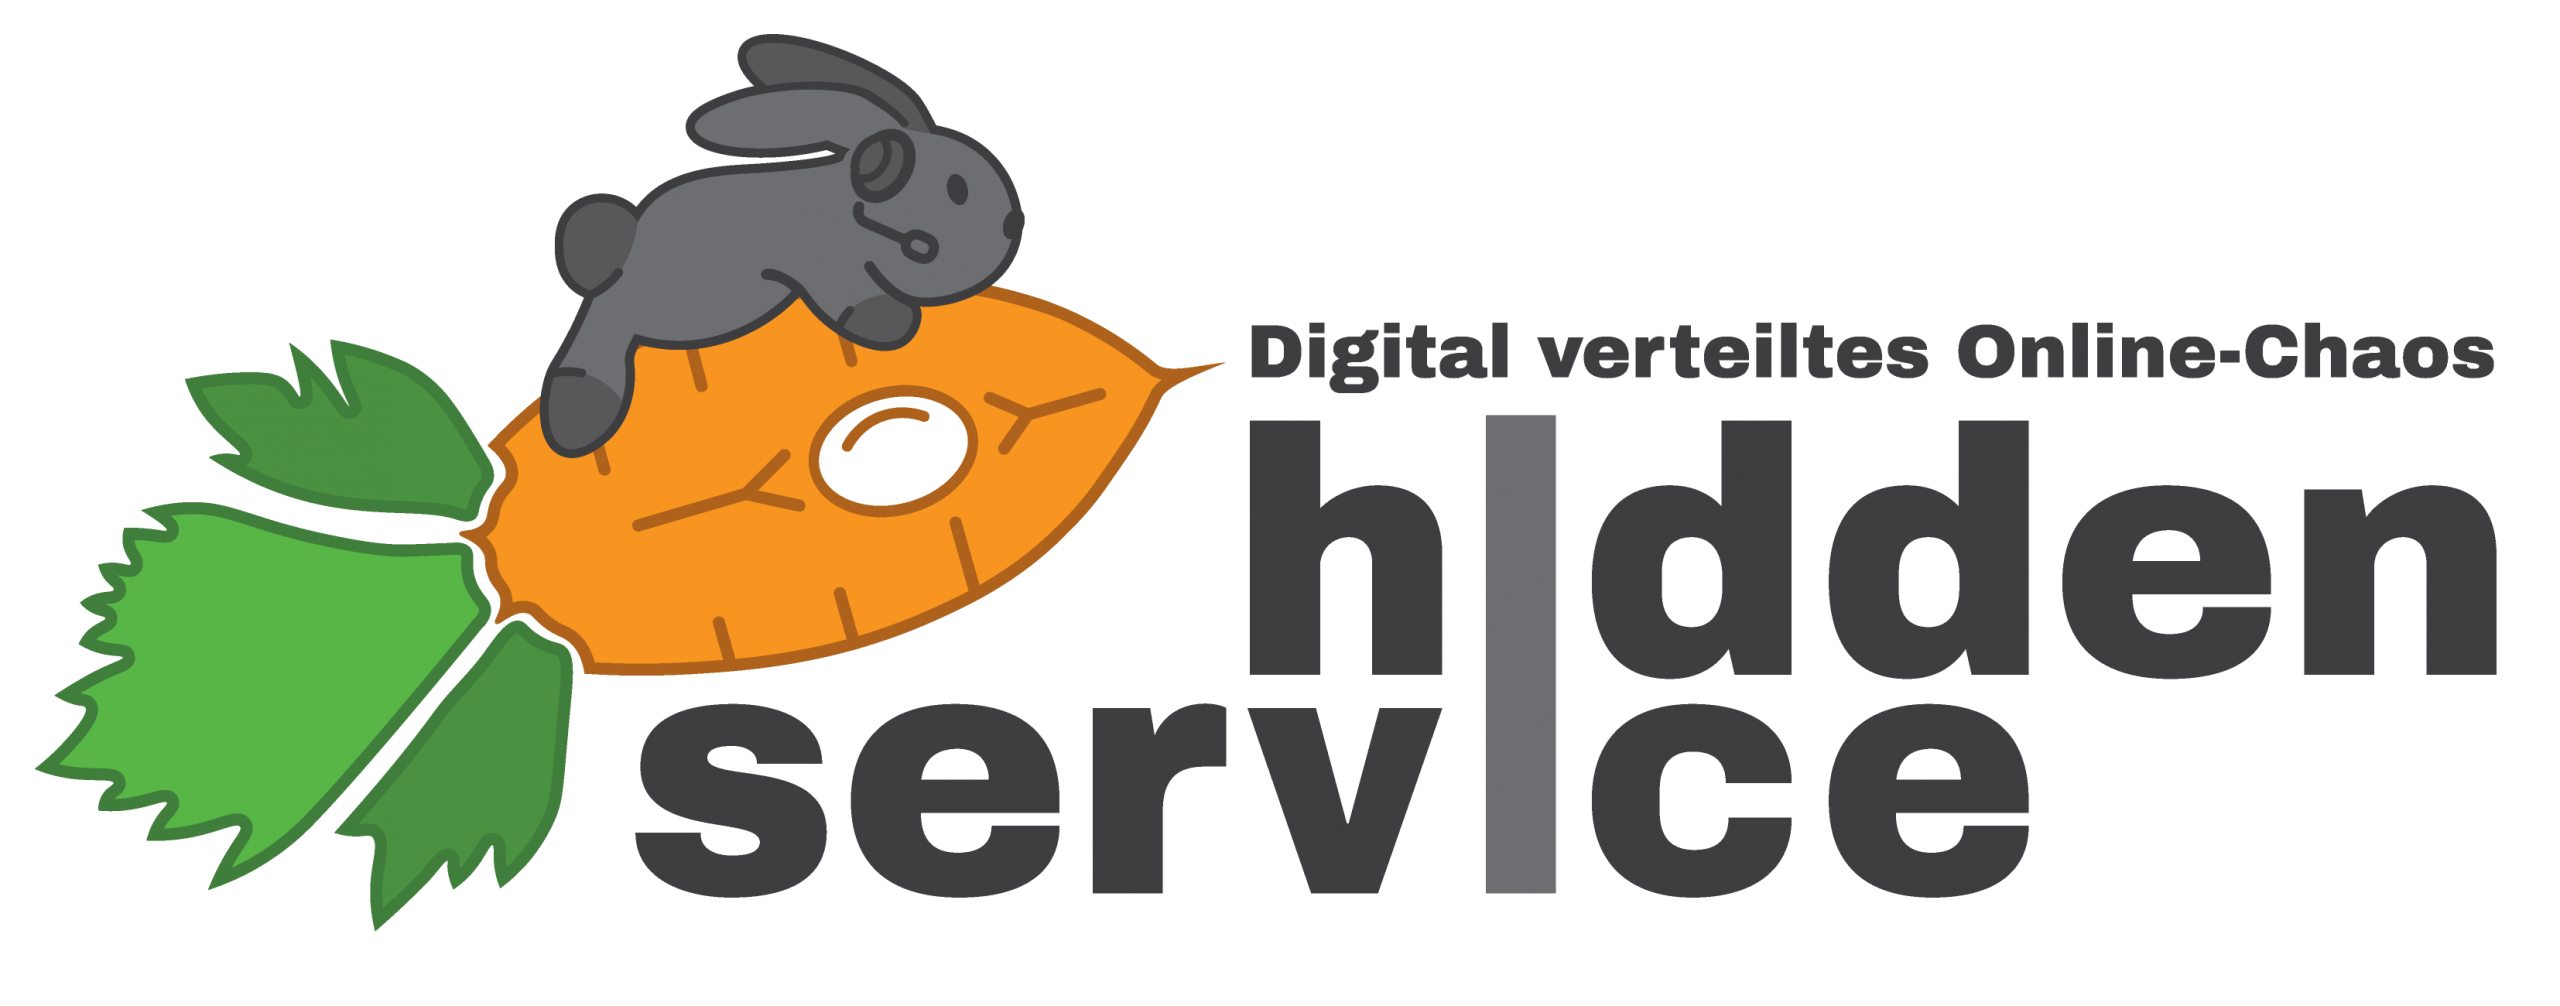 Hidden Service – A Digital Distributed Online-Chaos